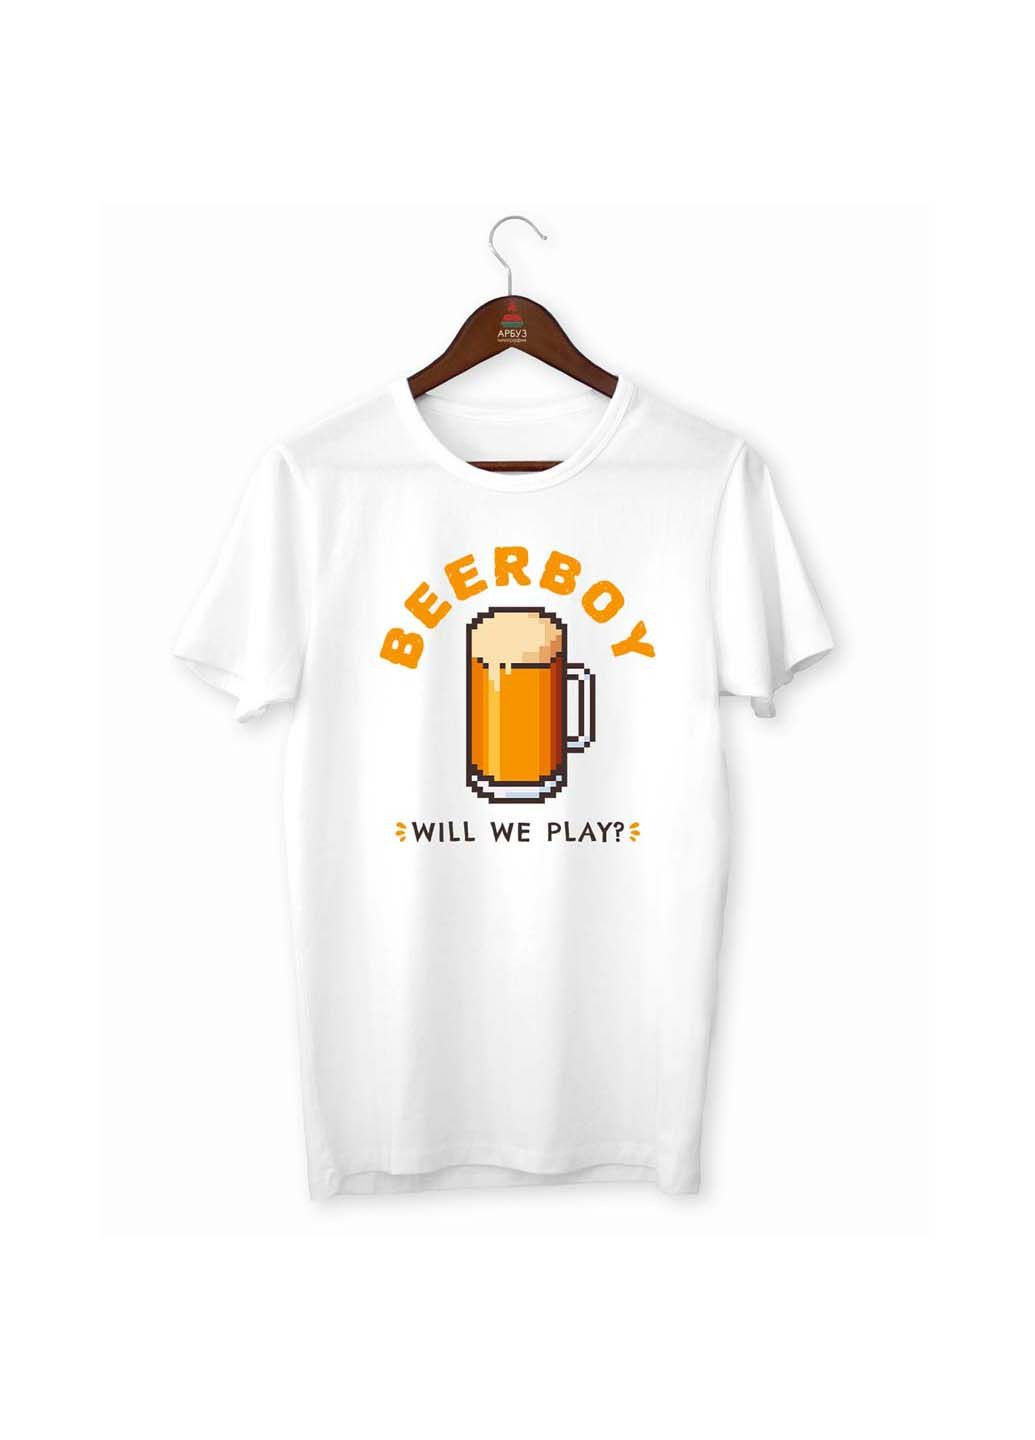 Белая футболка beerboy will we play Кавун